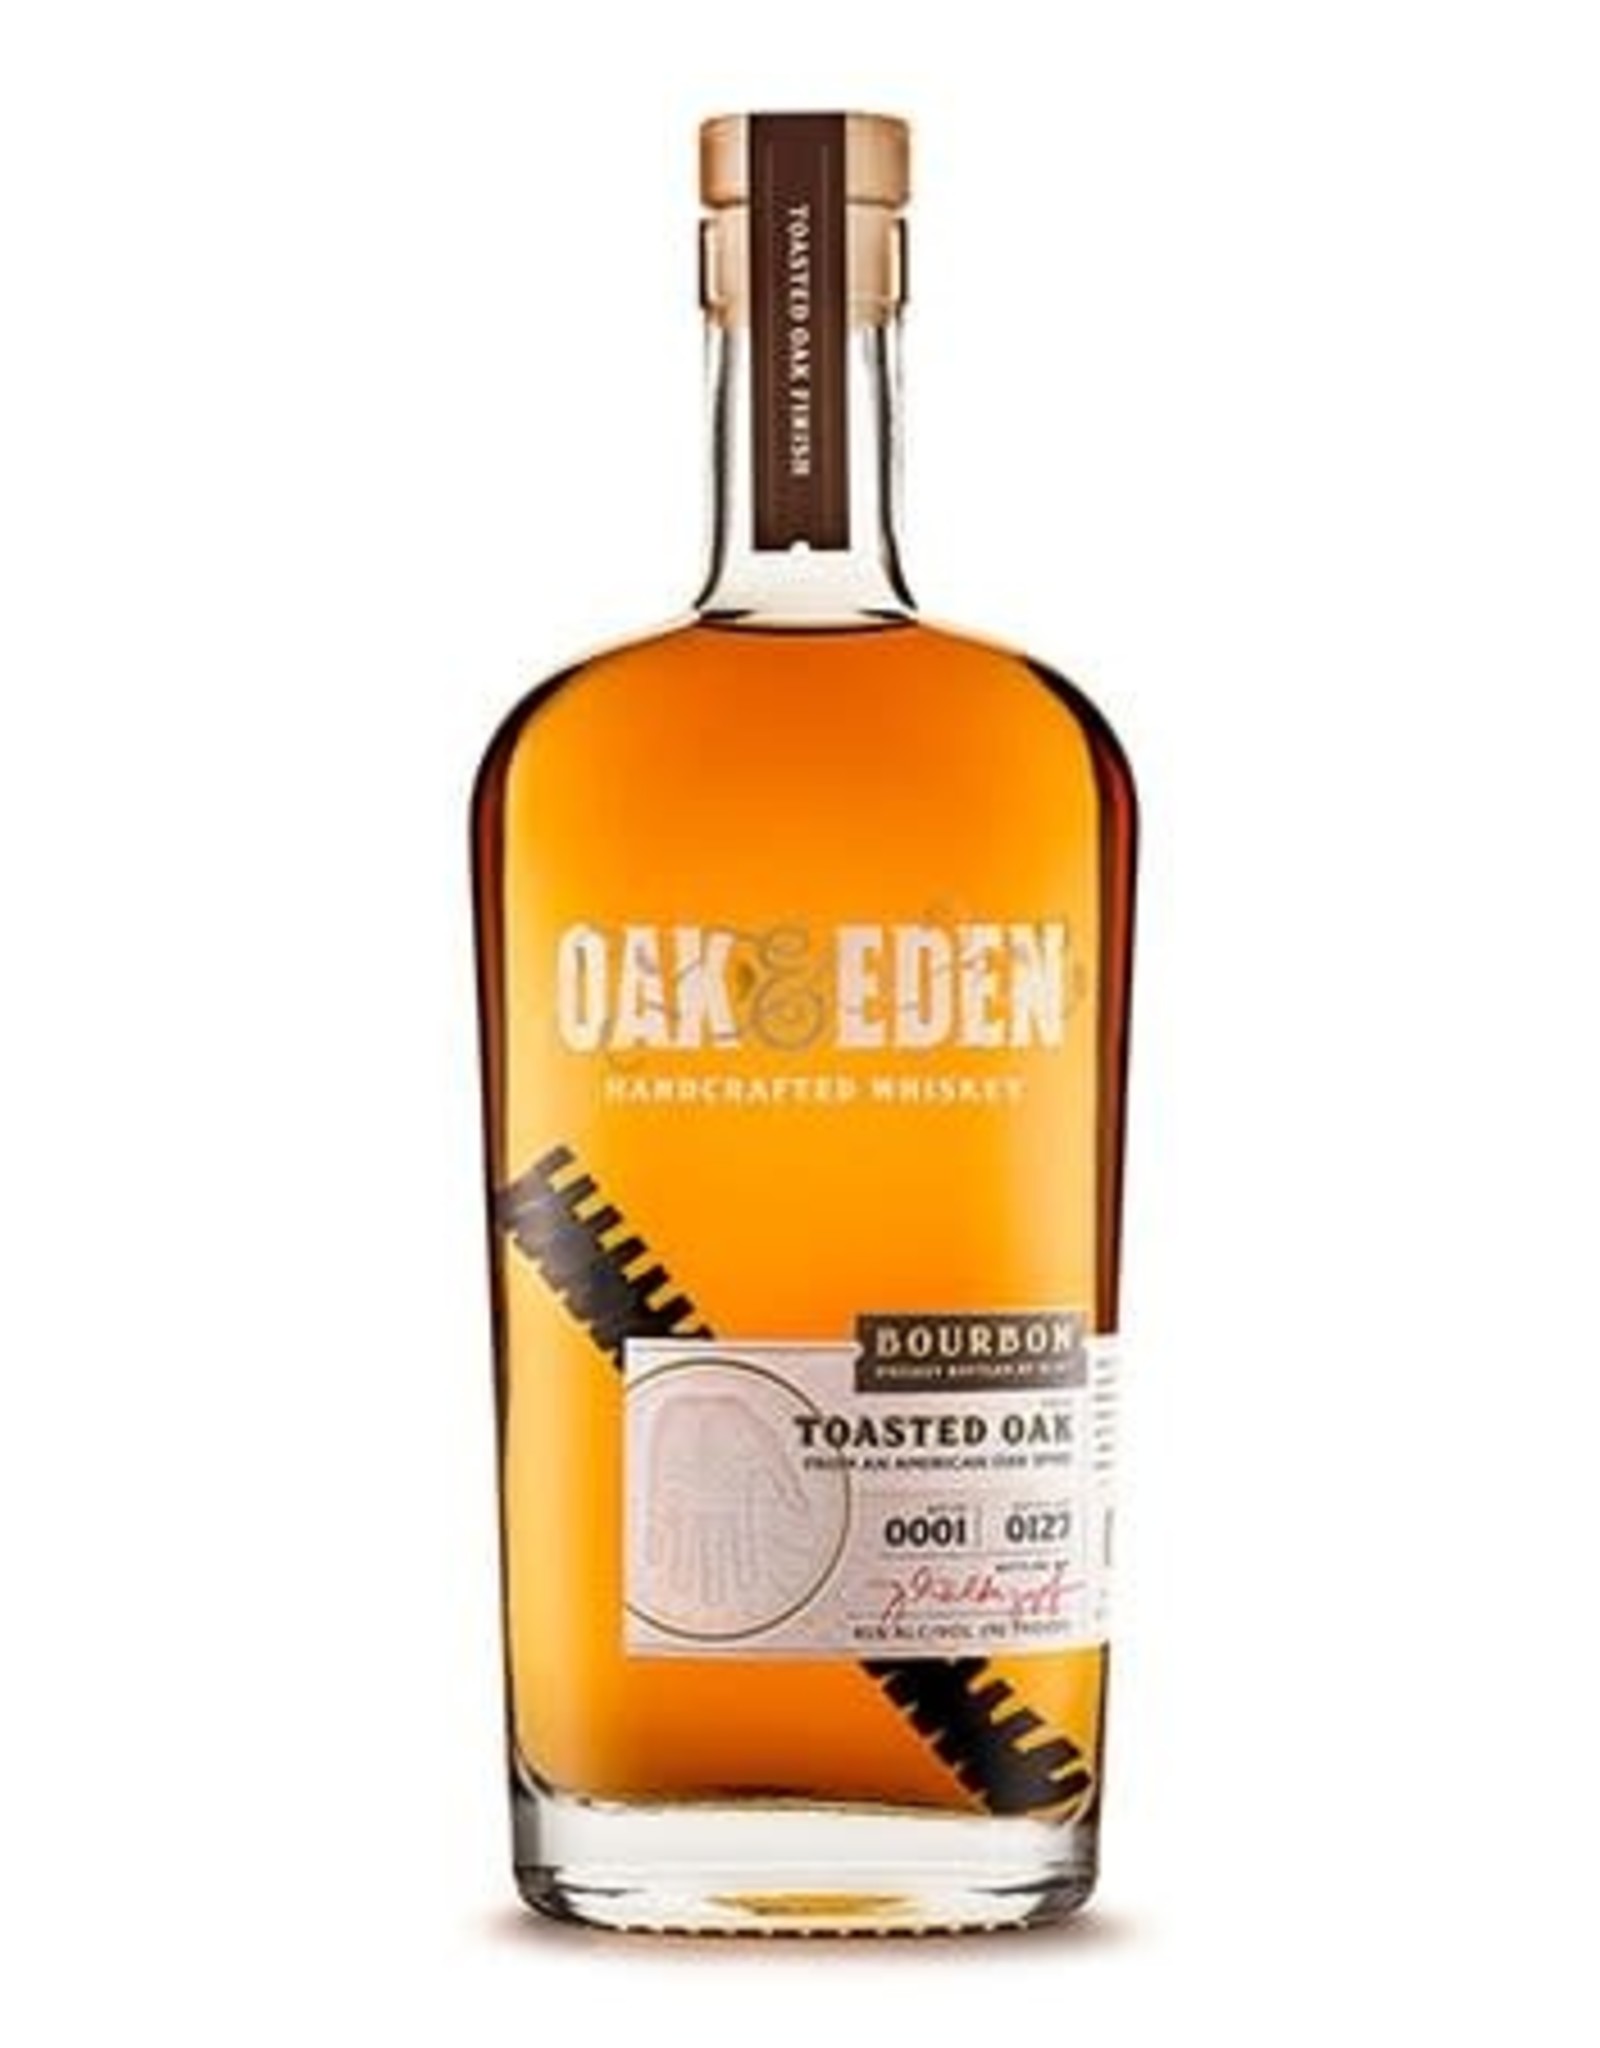 Oak & Eden Oak & Eden Finished With a Toasted Oak Bourbon 750 ml